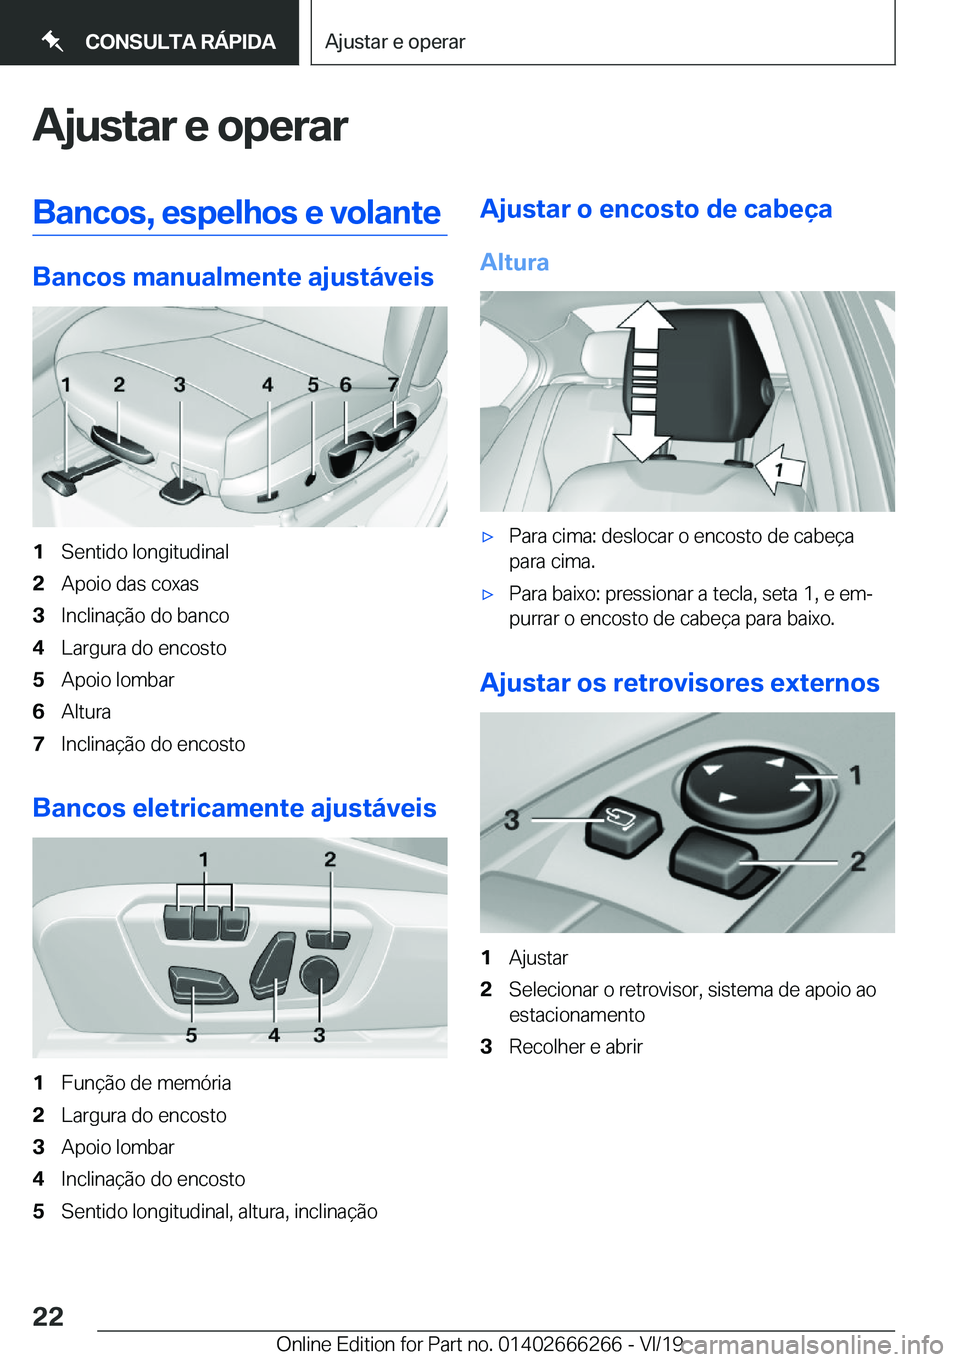 BMW 2 SERIES COUPE 2020  Manual do condutor (in Portuguese) �A�j�u�s�t�a�r��e��o�p�e�r�a�r�B�a�n�c�o�s�,��e�s�p�e�l�h�o�s��e��v�o�l�a�n�t�e
�B�a�n�c�o�s��m�a�n�u�a�l�m�e�n�t�e��a�j�u�s�t�á�v�e�i�s
�1�S�e�n�t�i�d�o��l�o�n�g�i�t�u�d�i�n�a�l�2�A�p�o�i�o�